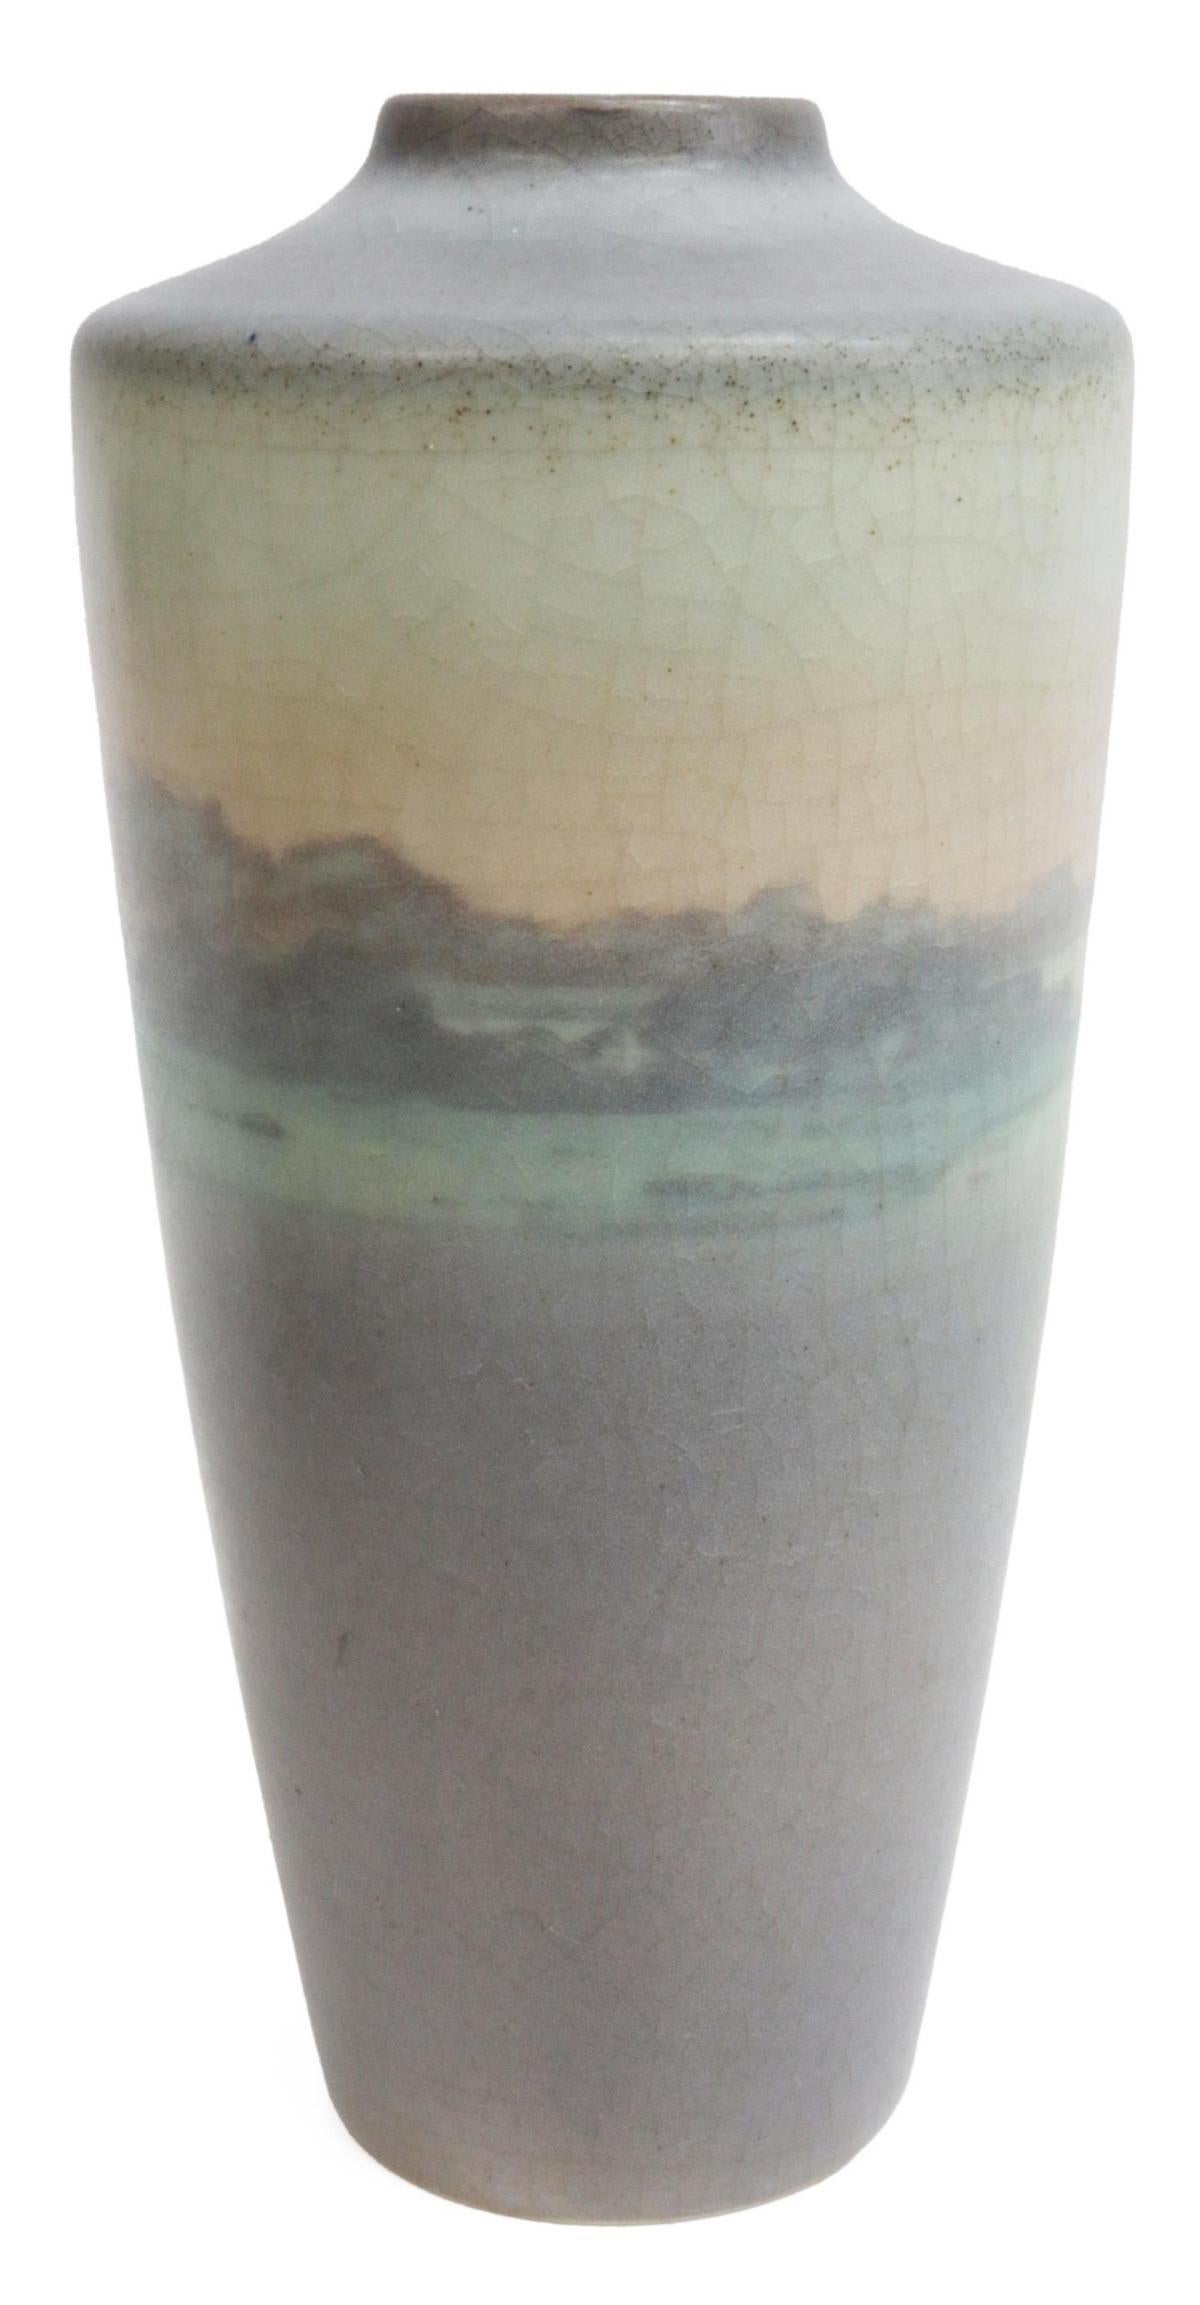 Vase en poterie Arts and Crafts américaine, Rookwood, vers 1913, numéro de forme 1867, initiales incisées SEC (Sarah Elizabeth Coyne, américaine, 1891-1939), glaçure véline, décor de paysage aquatique.